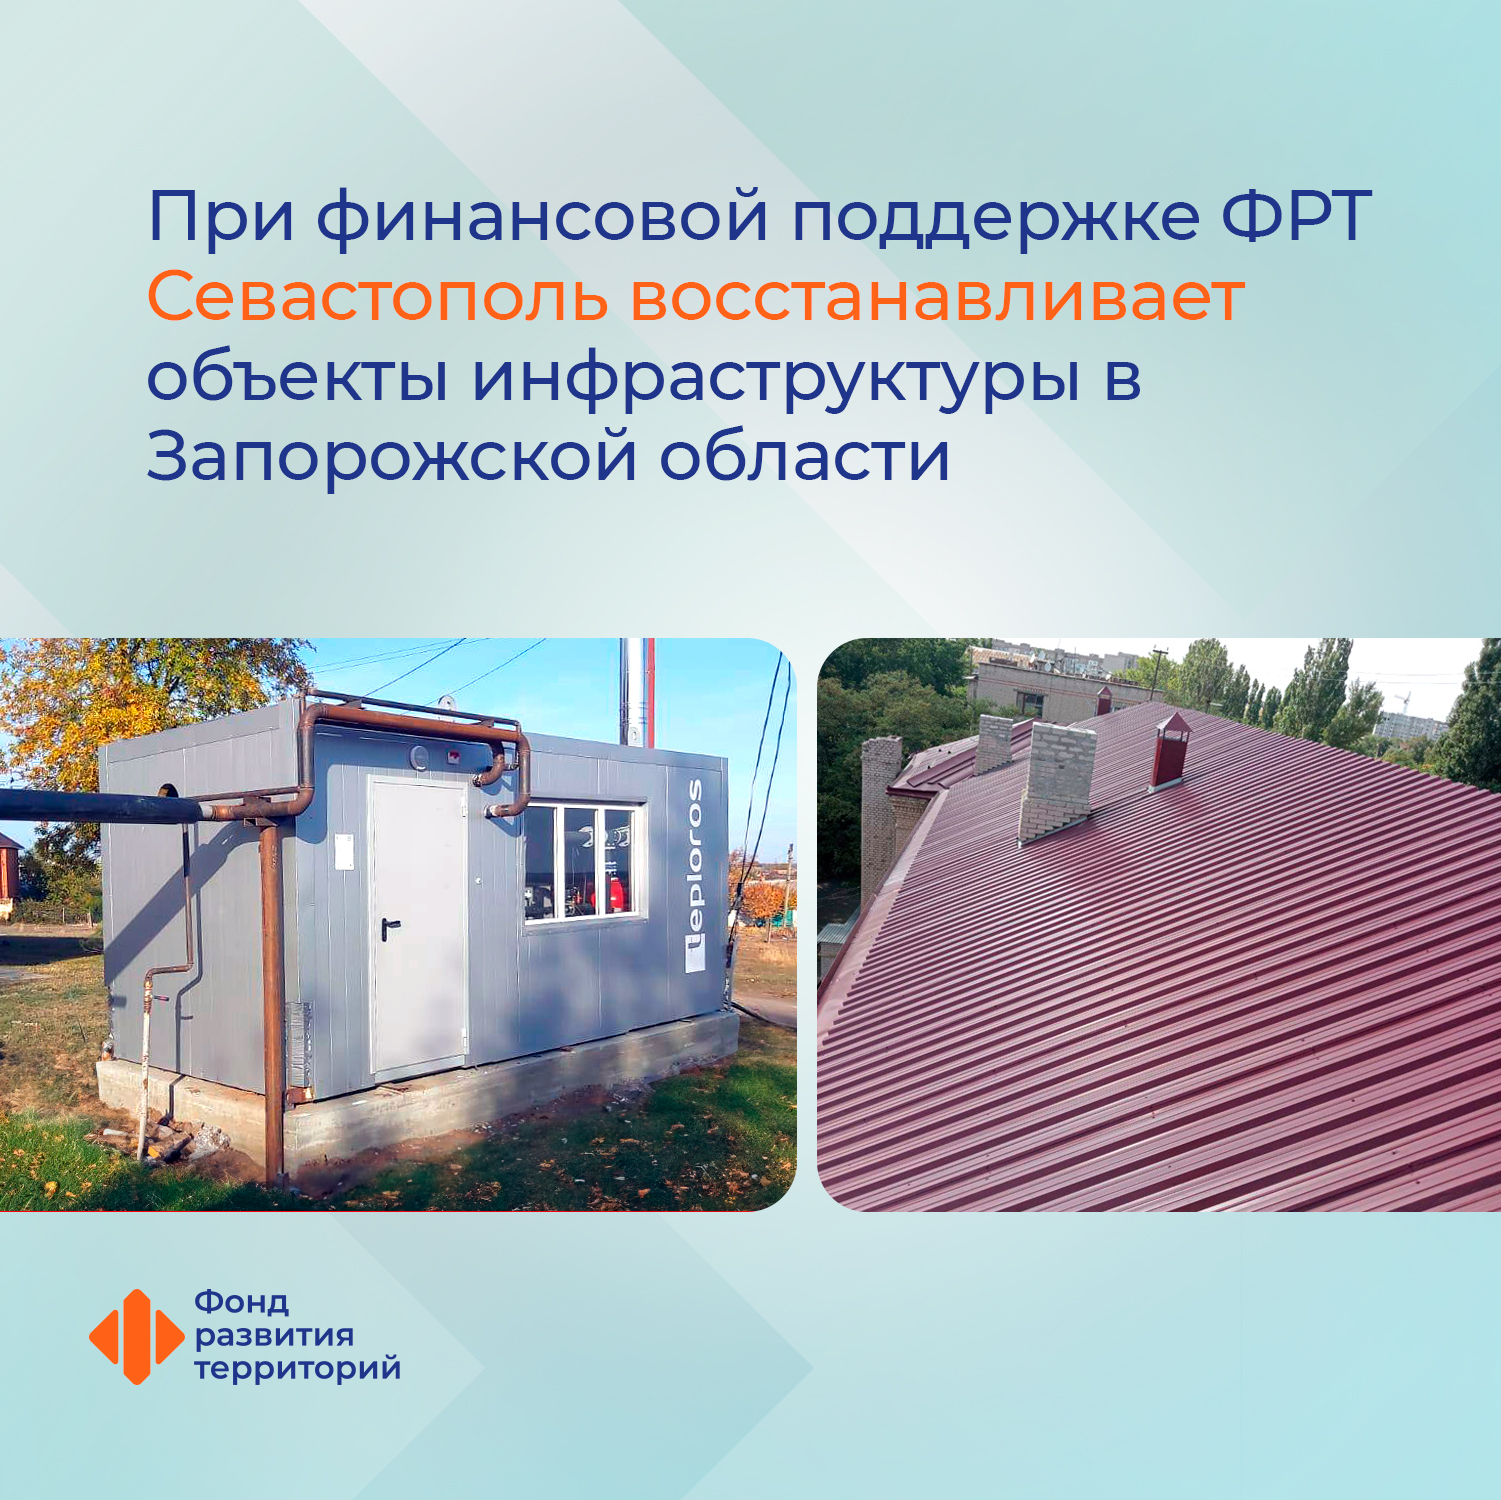 При финансовой поддержке ФРТ Севастополь восстанавливает объекты инфраструктуры в Запорожской области